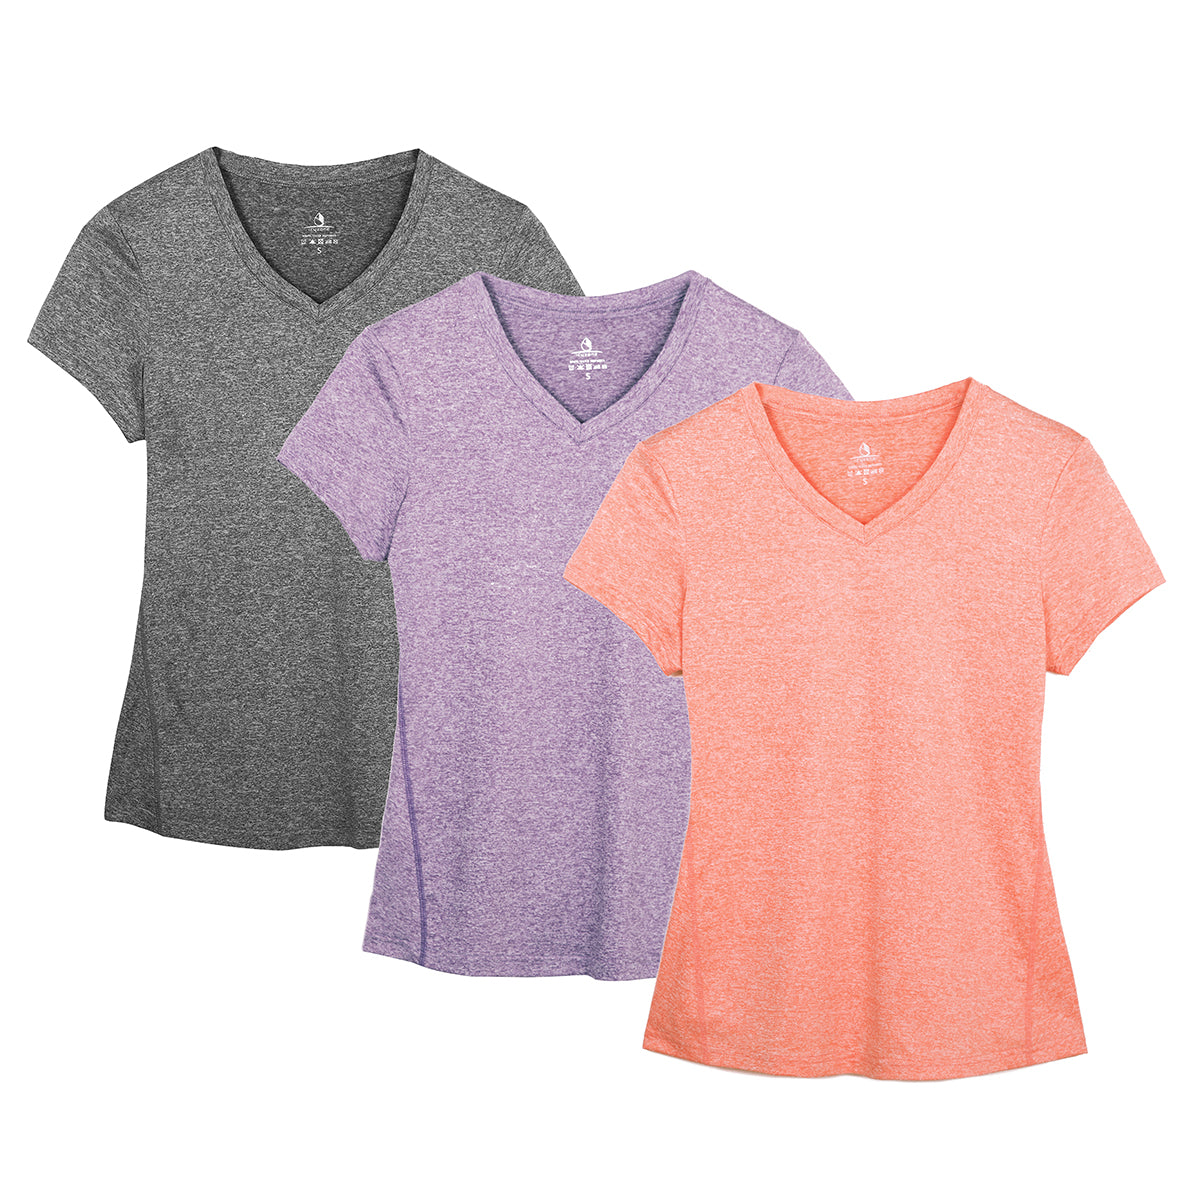  Women Short Sleeve T-Shirt Yoga Tops Running Shirt